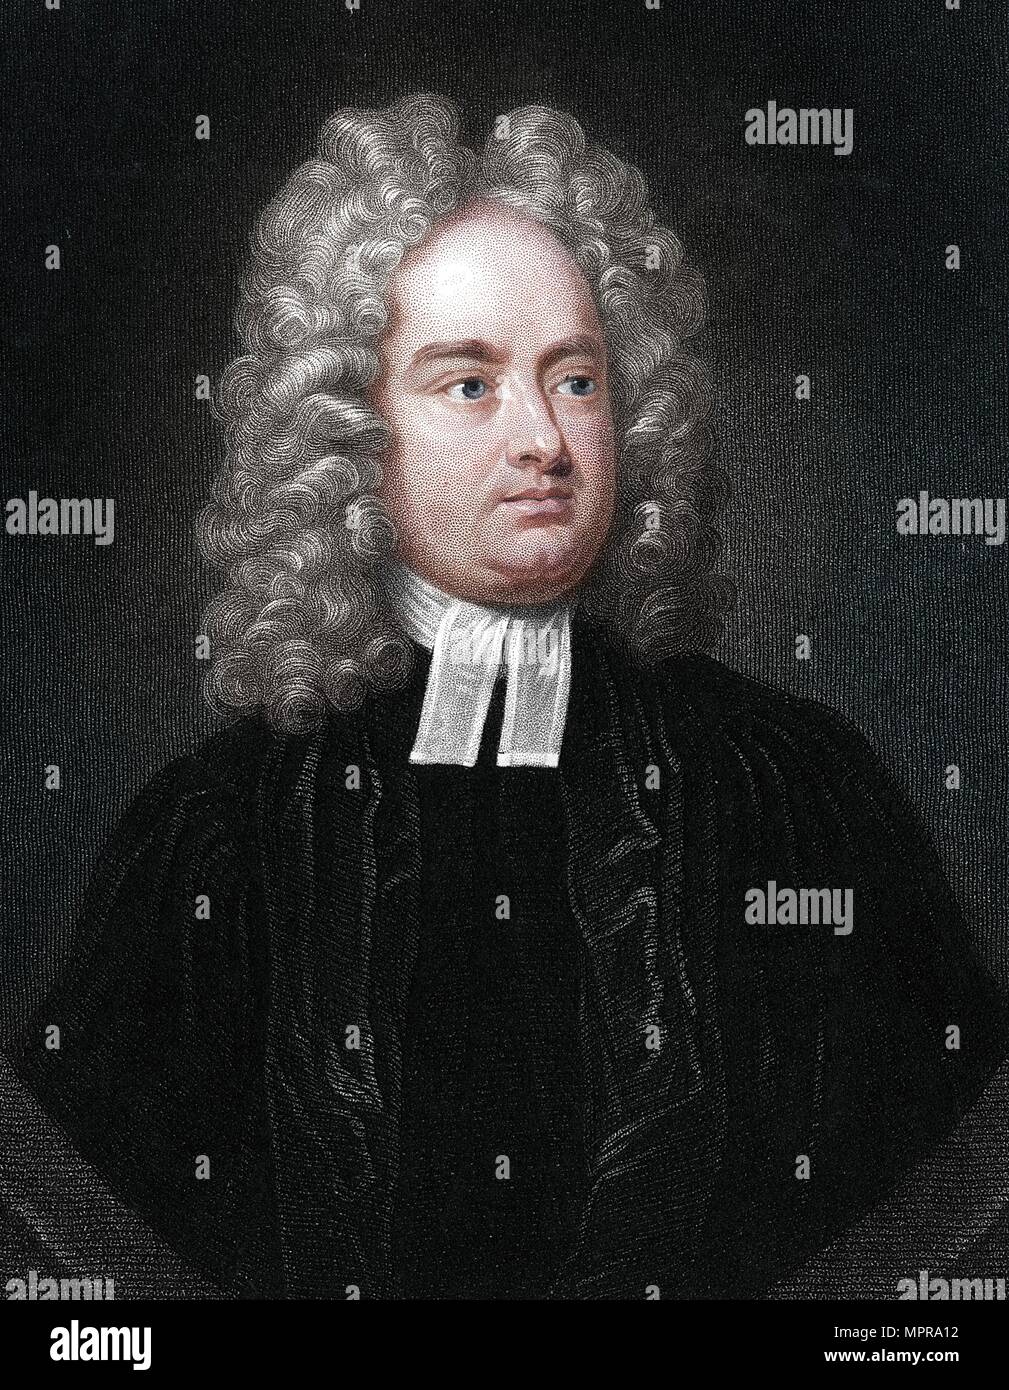 Jonathan Swift, clérigo angloirlandés, humorista y poeta. Artista: Desconocido. Foto de stock